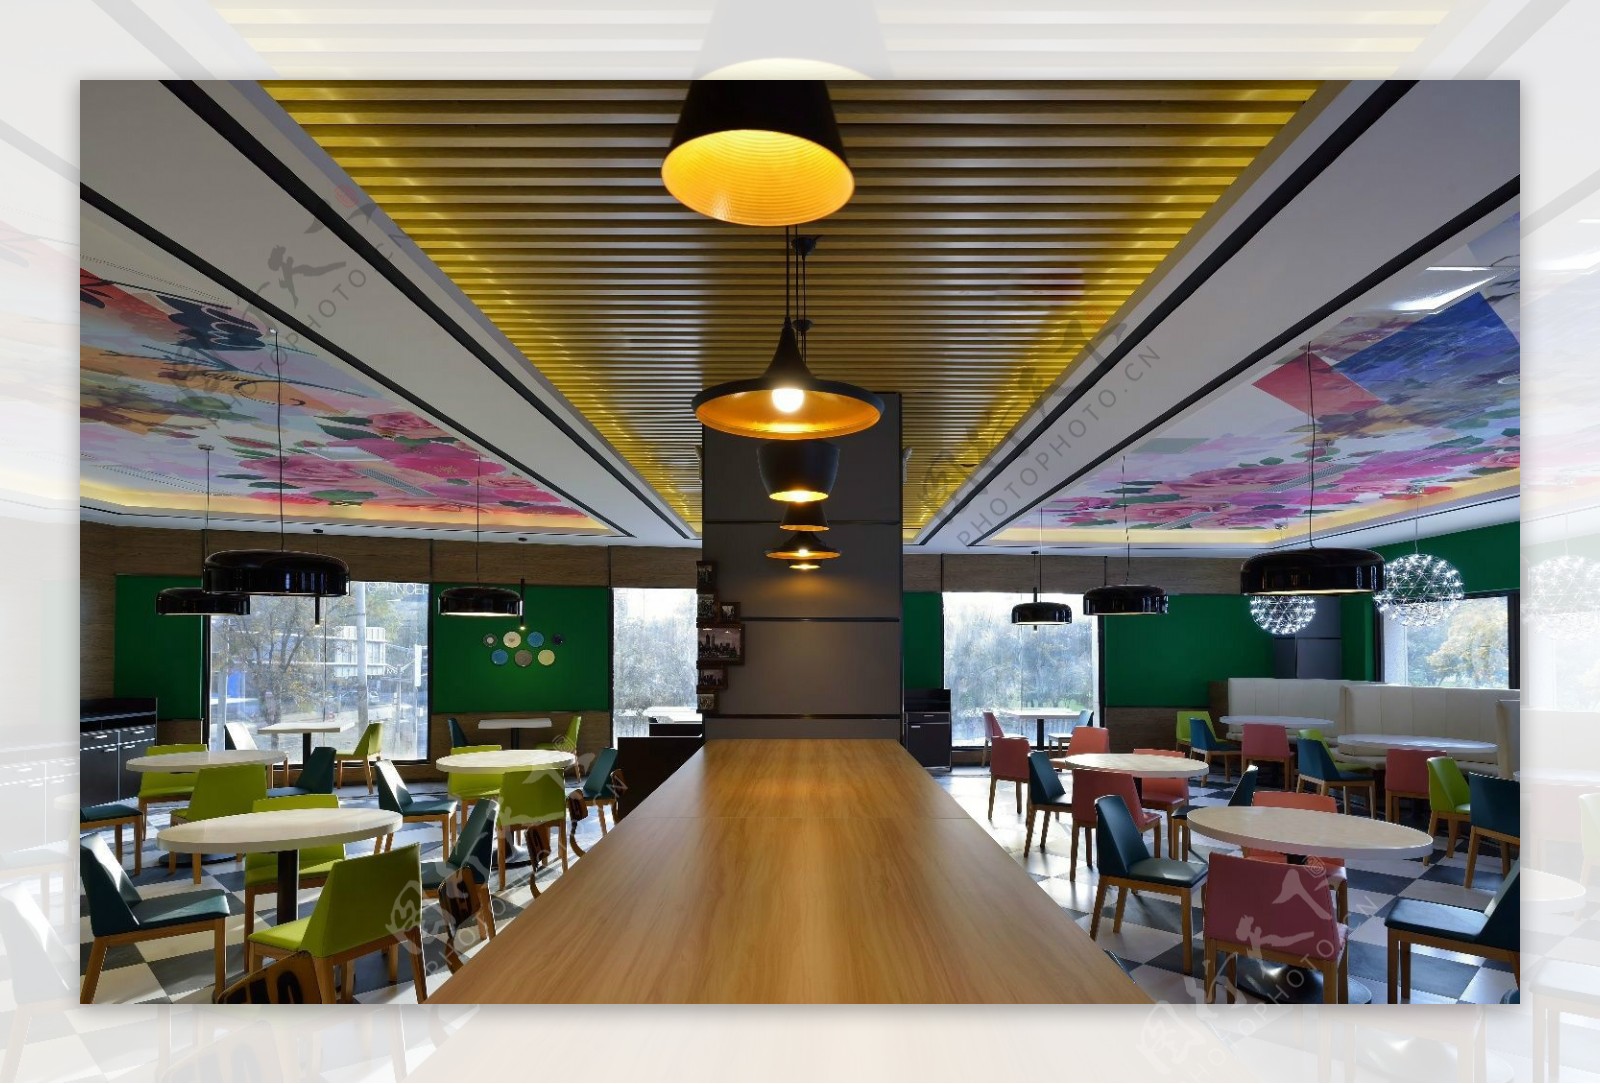 现代时尚绿色背景墙餐厅工装装修效果图